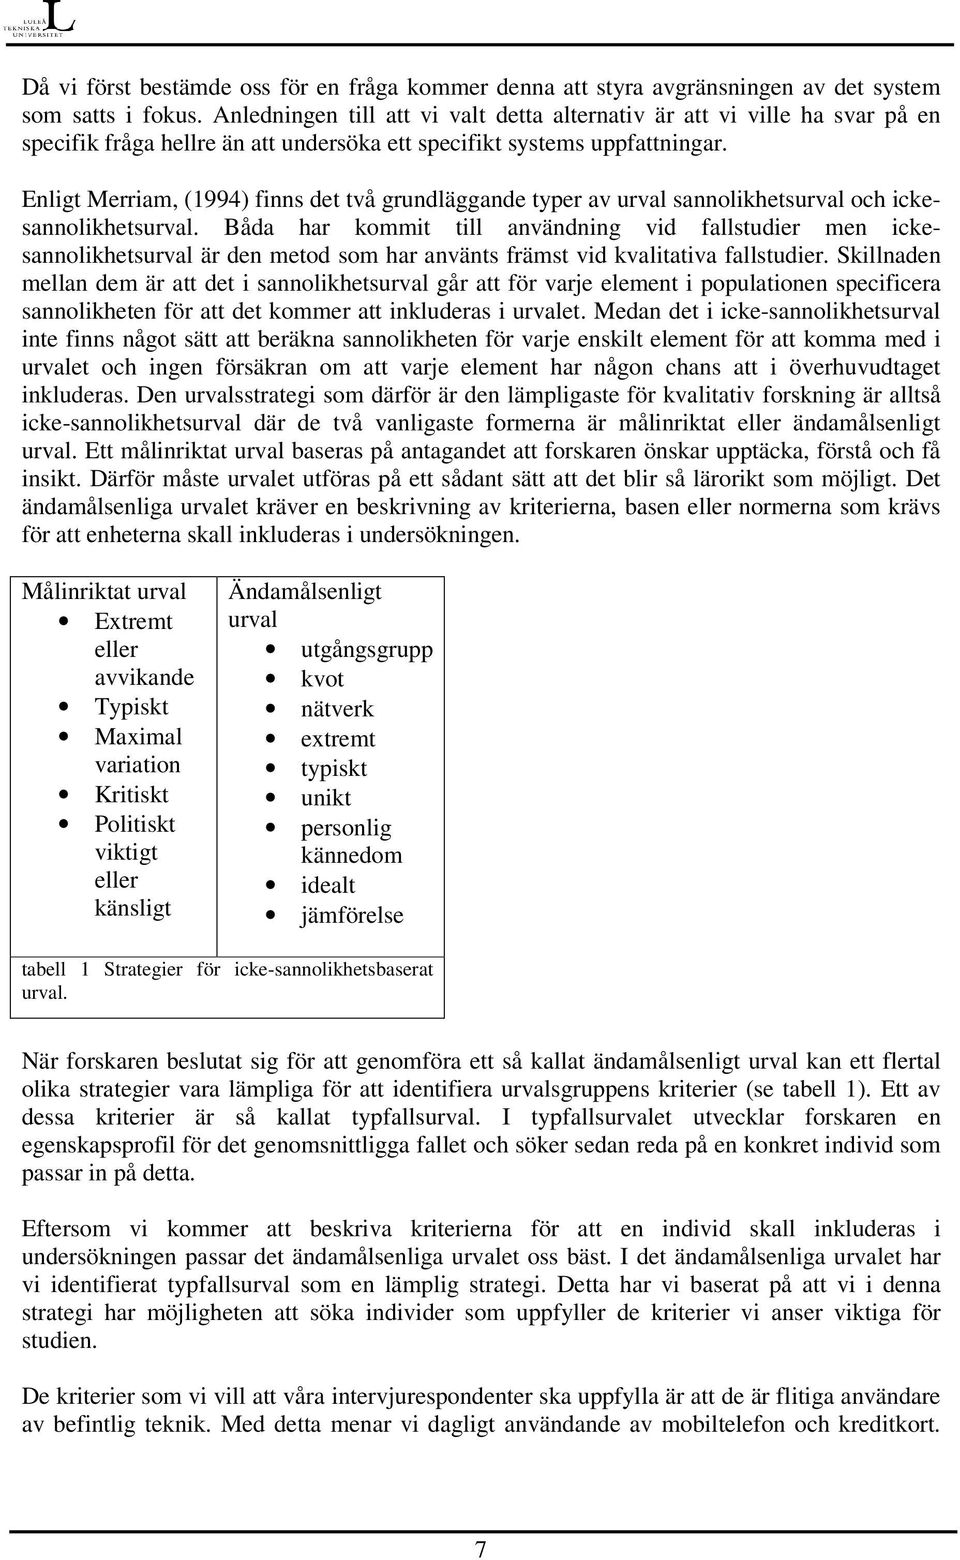 Enligt Merriam, (1994) finns det två grundläggande typer av urval sannolikhetsurval och ickesannolikhetsurval.